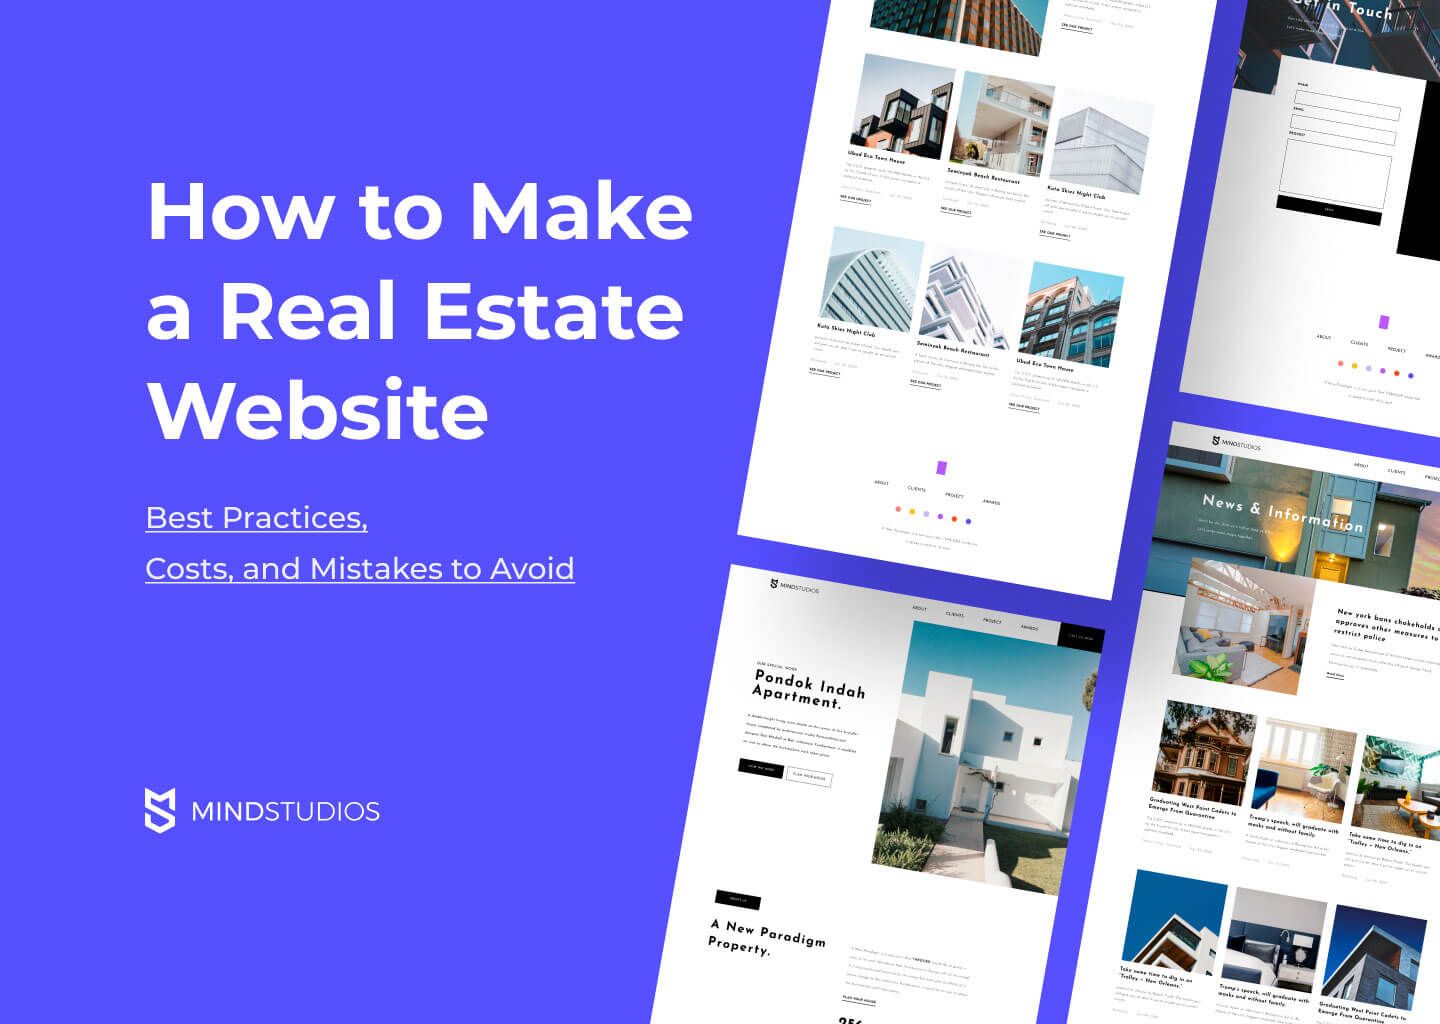 30 Best Real Estate Agent Websites - Agent Image